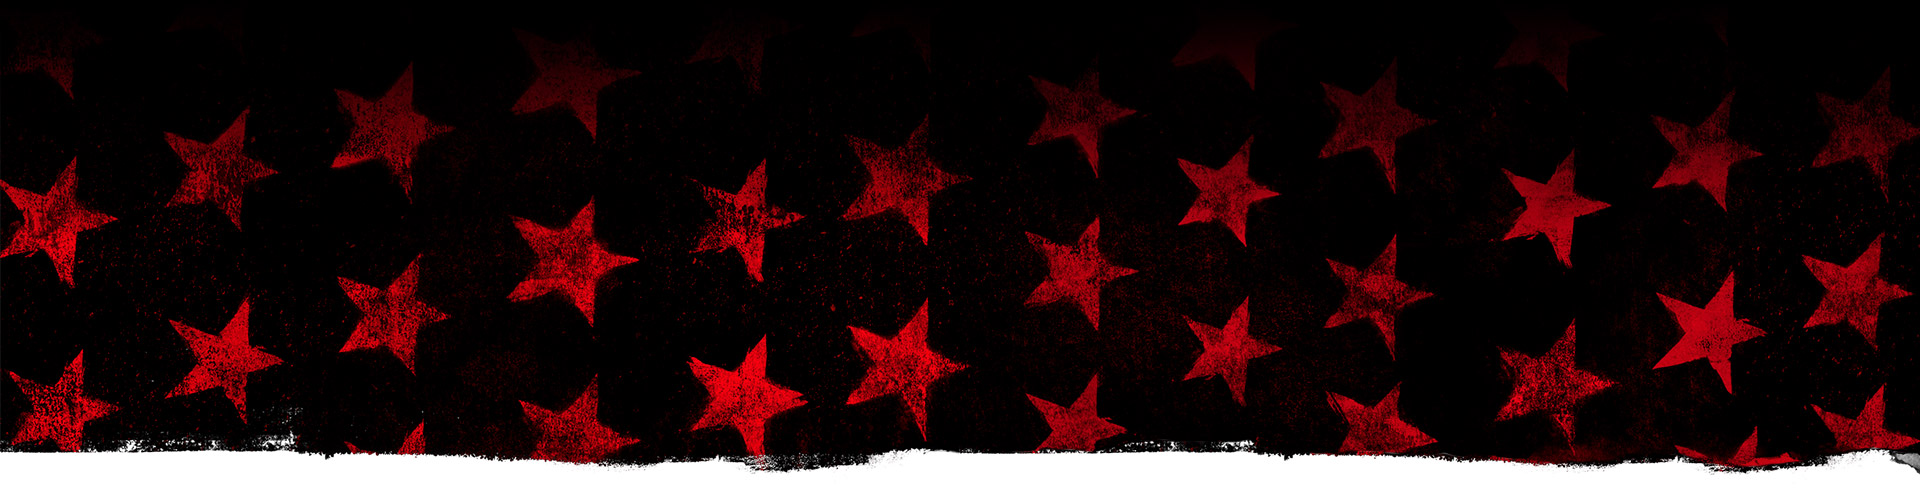 Červené hviezdy na čiernom pozadí.